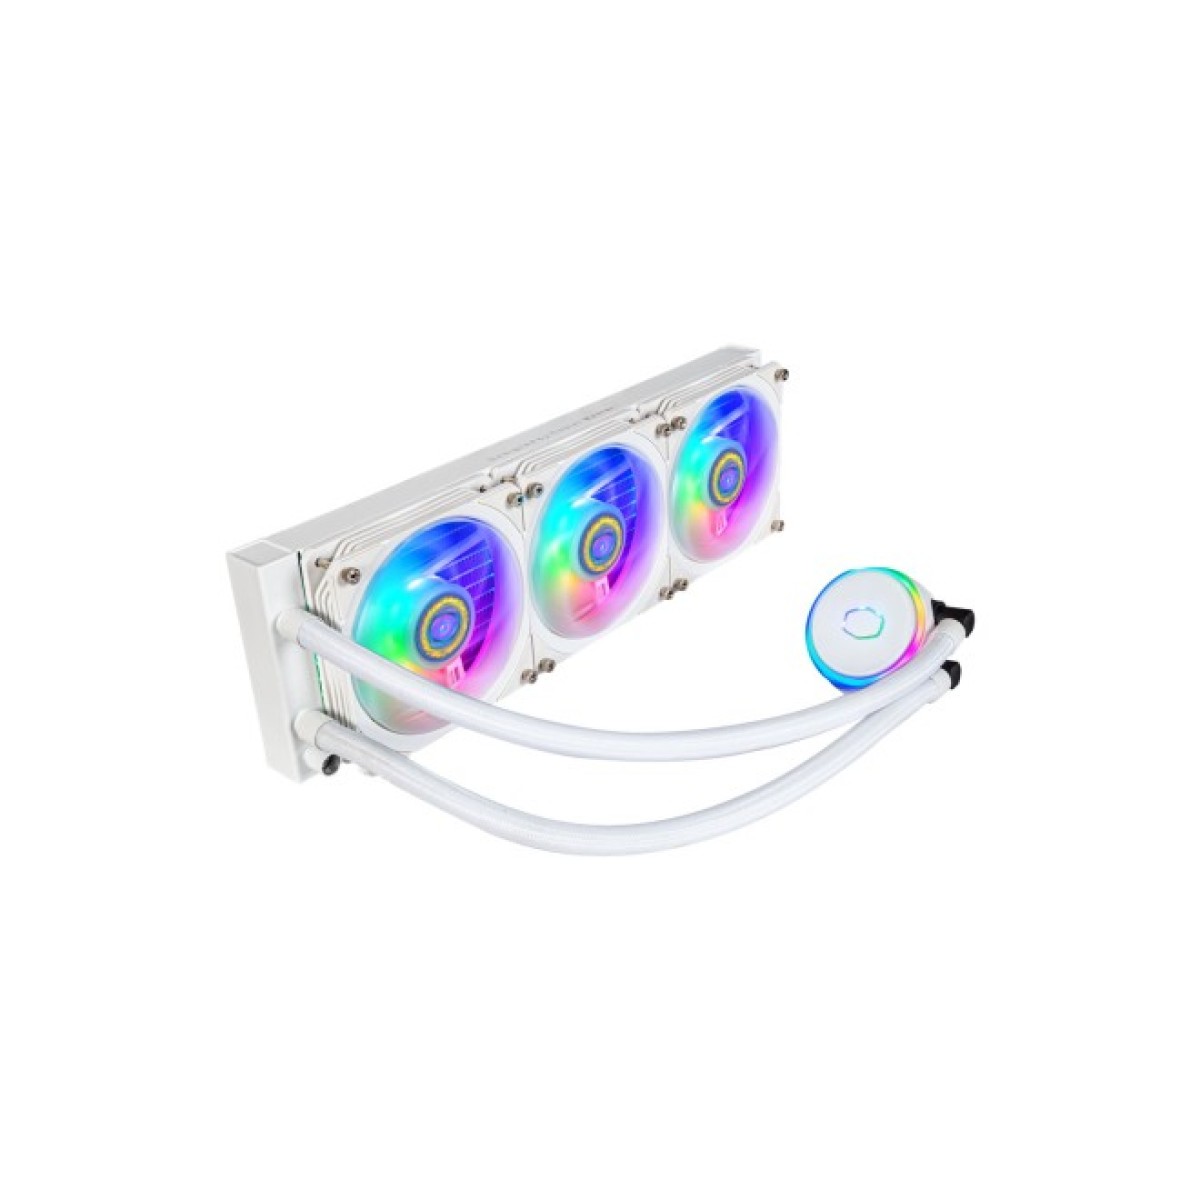 Система водяного охлаждения CoolerMaster MasterLiquid PL360 Flux White Edition (MLY-D36M-A23PZ-RW) 256_256.jpg